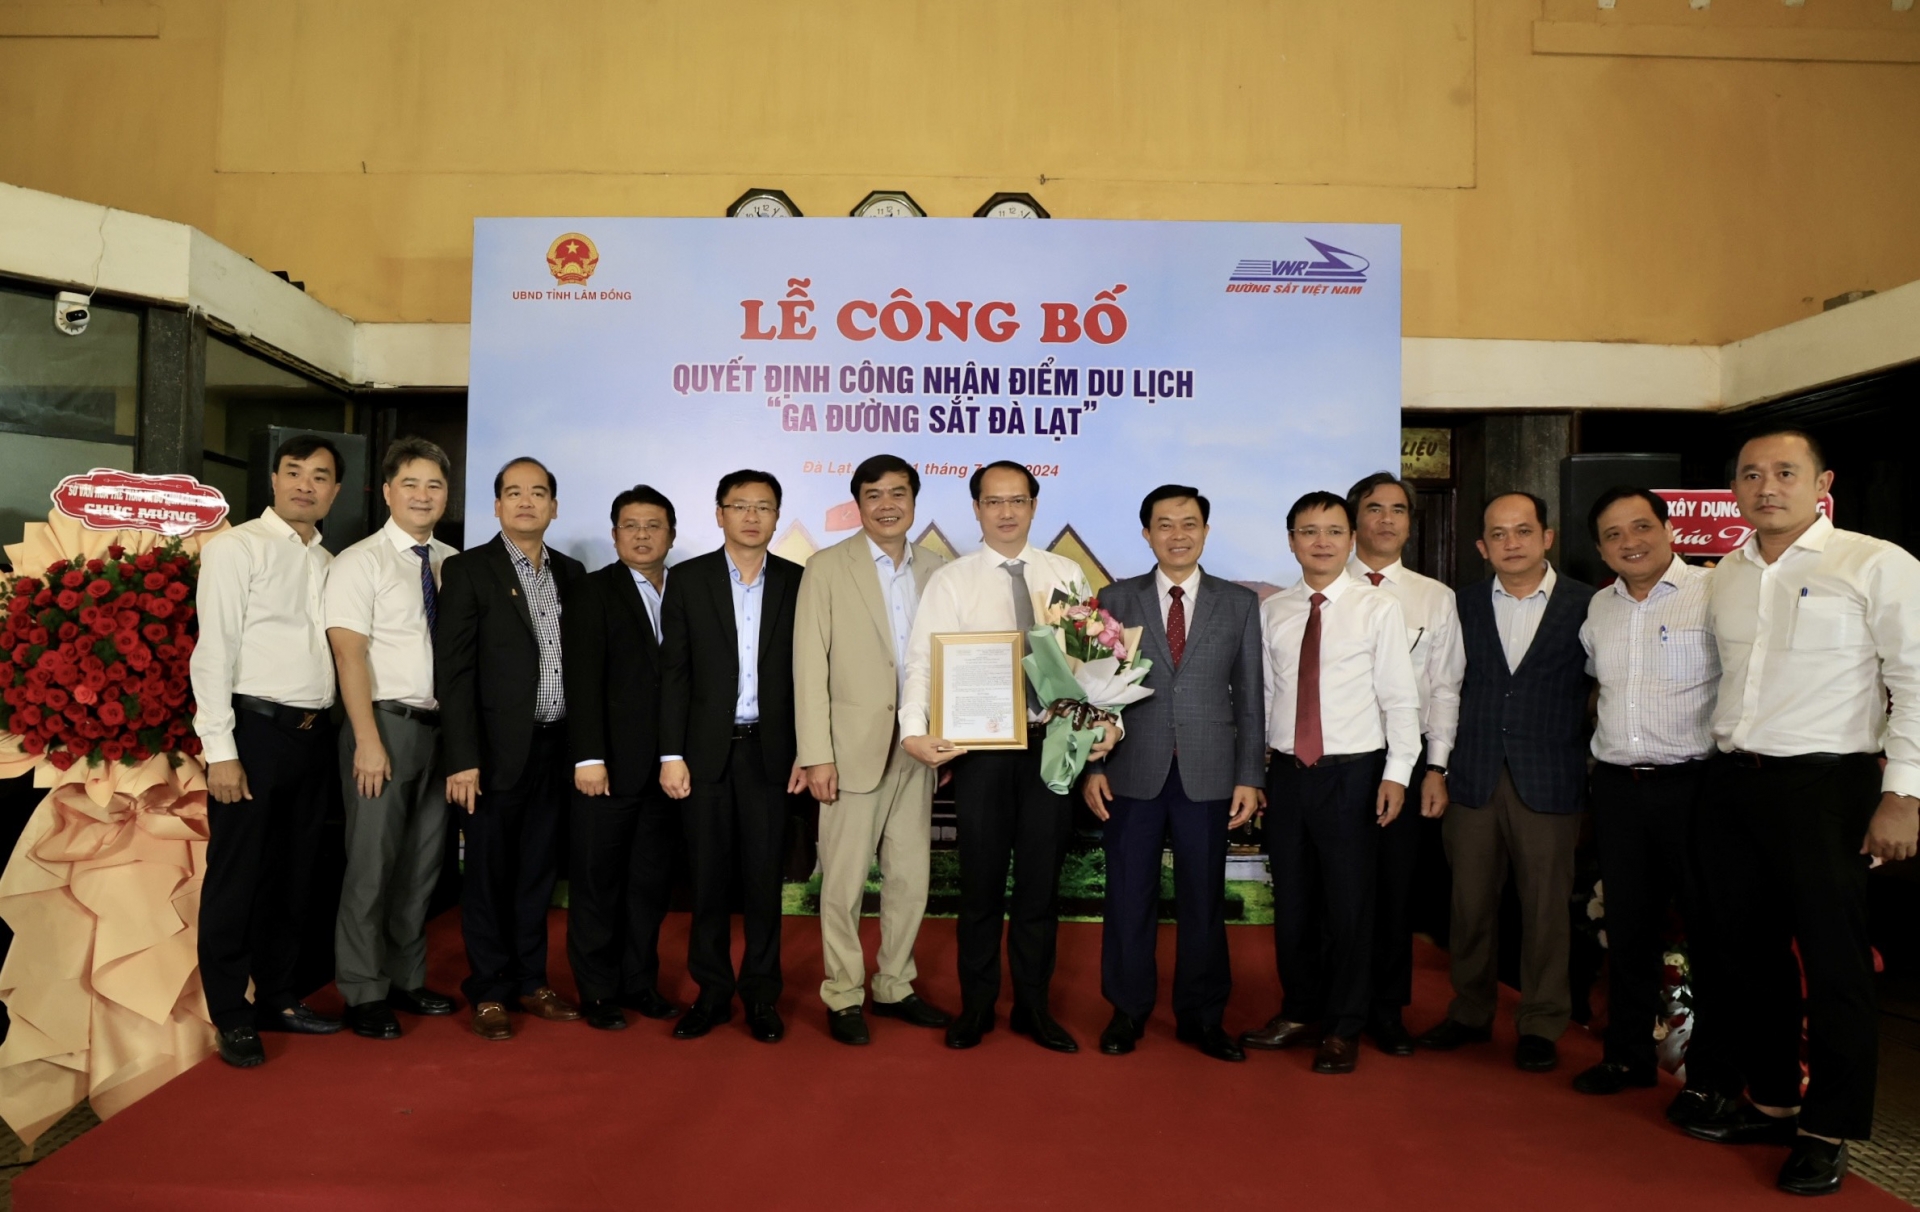 Các đại biểu của tỉnh Lâm Đồng và thành phố Đà Lạt tham dự Lễ công bố chụp ảnh lưu niệm với lãnh đạo Tổng Công ty Đường sắt Việt Nam